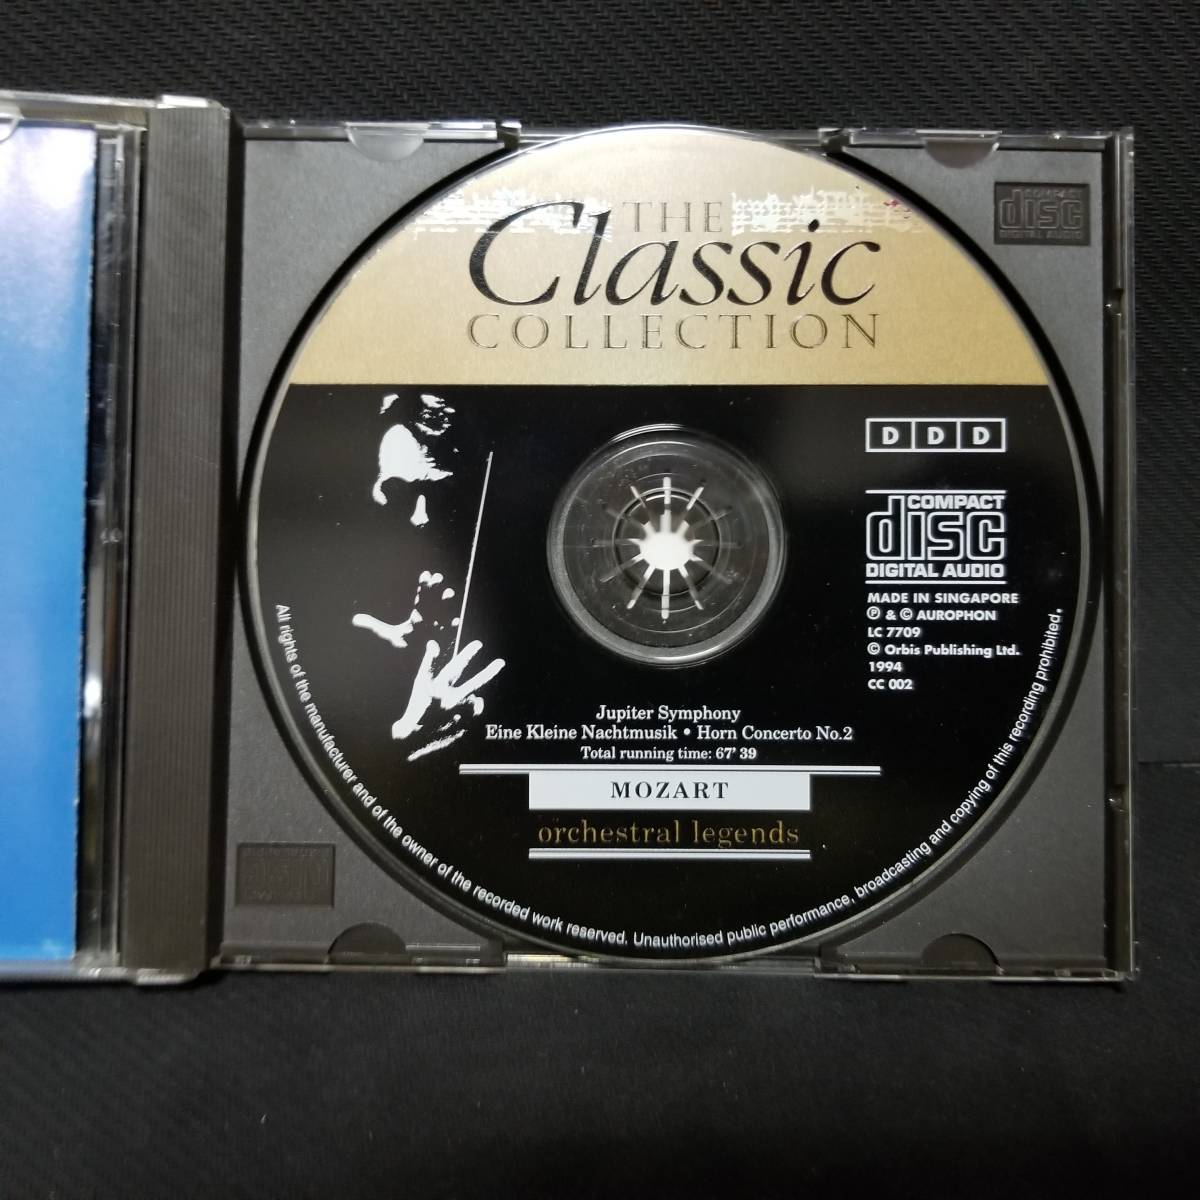 ・THE Classic COLLECTION 2 モーツァルト 魅力の管弦楽曲集 交響曲第41番《ジュピター》●アイネ・クライネ・ナハトムジーク_画像5